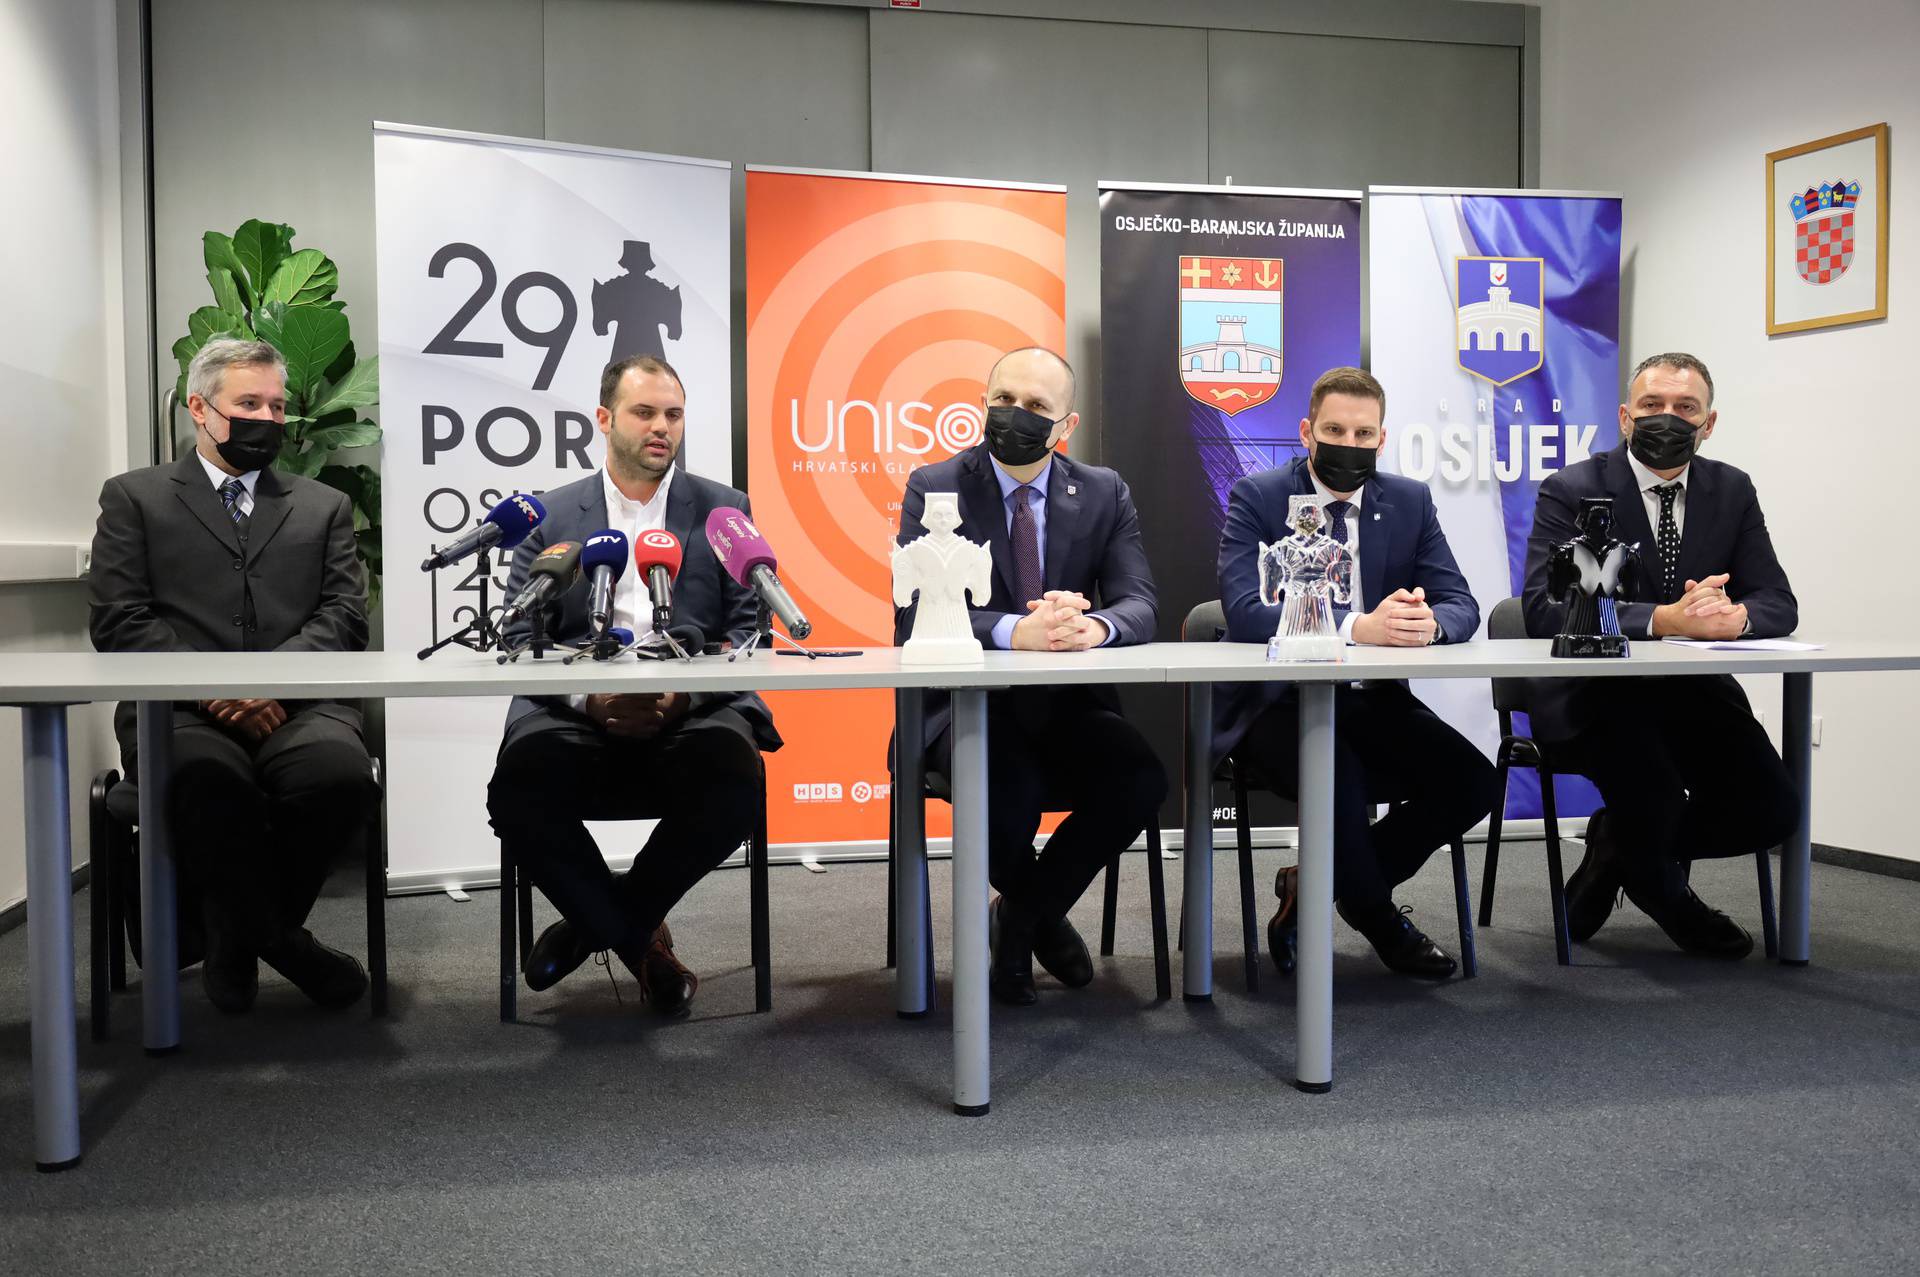 Porin stiže u Osijek: 'Nakon dugo vremena napokon ćemo ponovno moći ući u dvoranu'